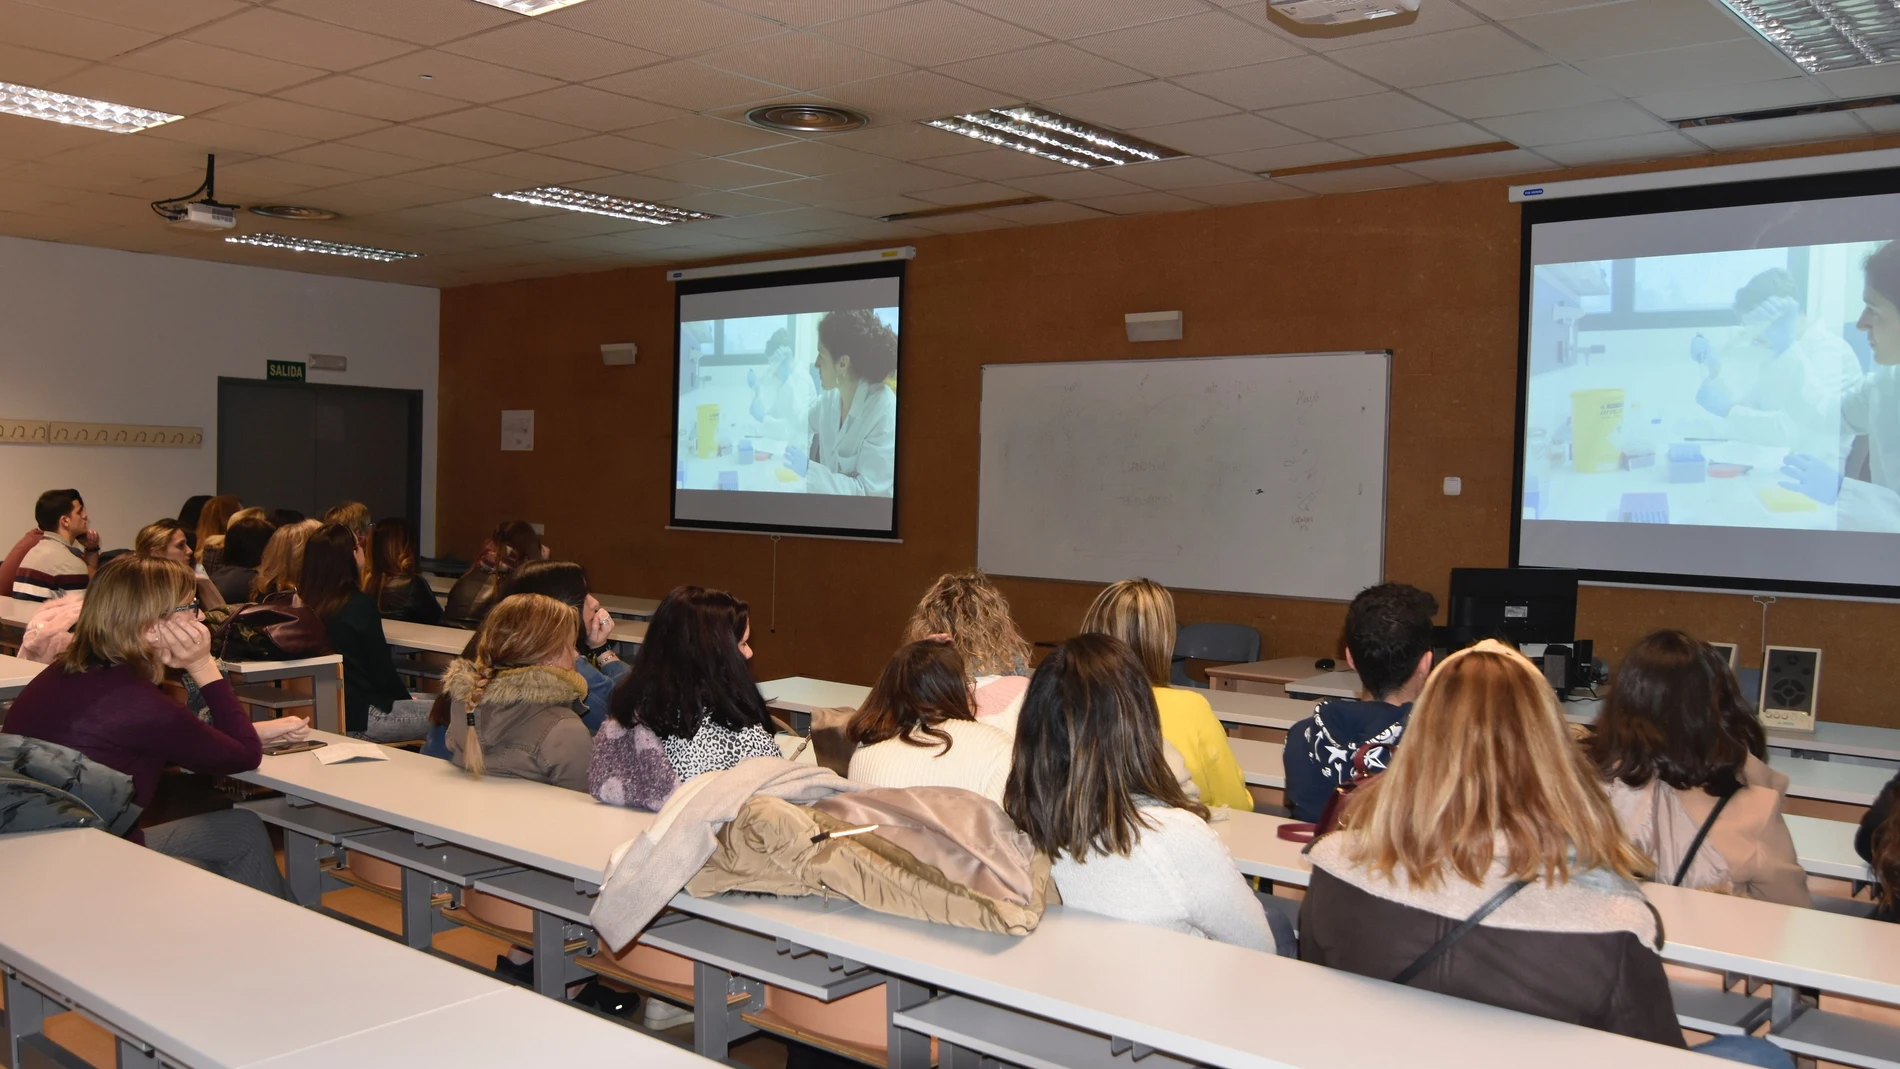 Córdoba.- Educación.- Unos 700 alumnos se acercarán al Hospital Reina Sofía para conocer su funcionamiento